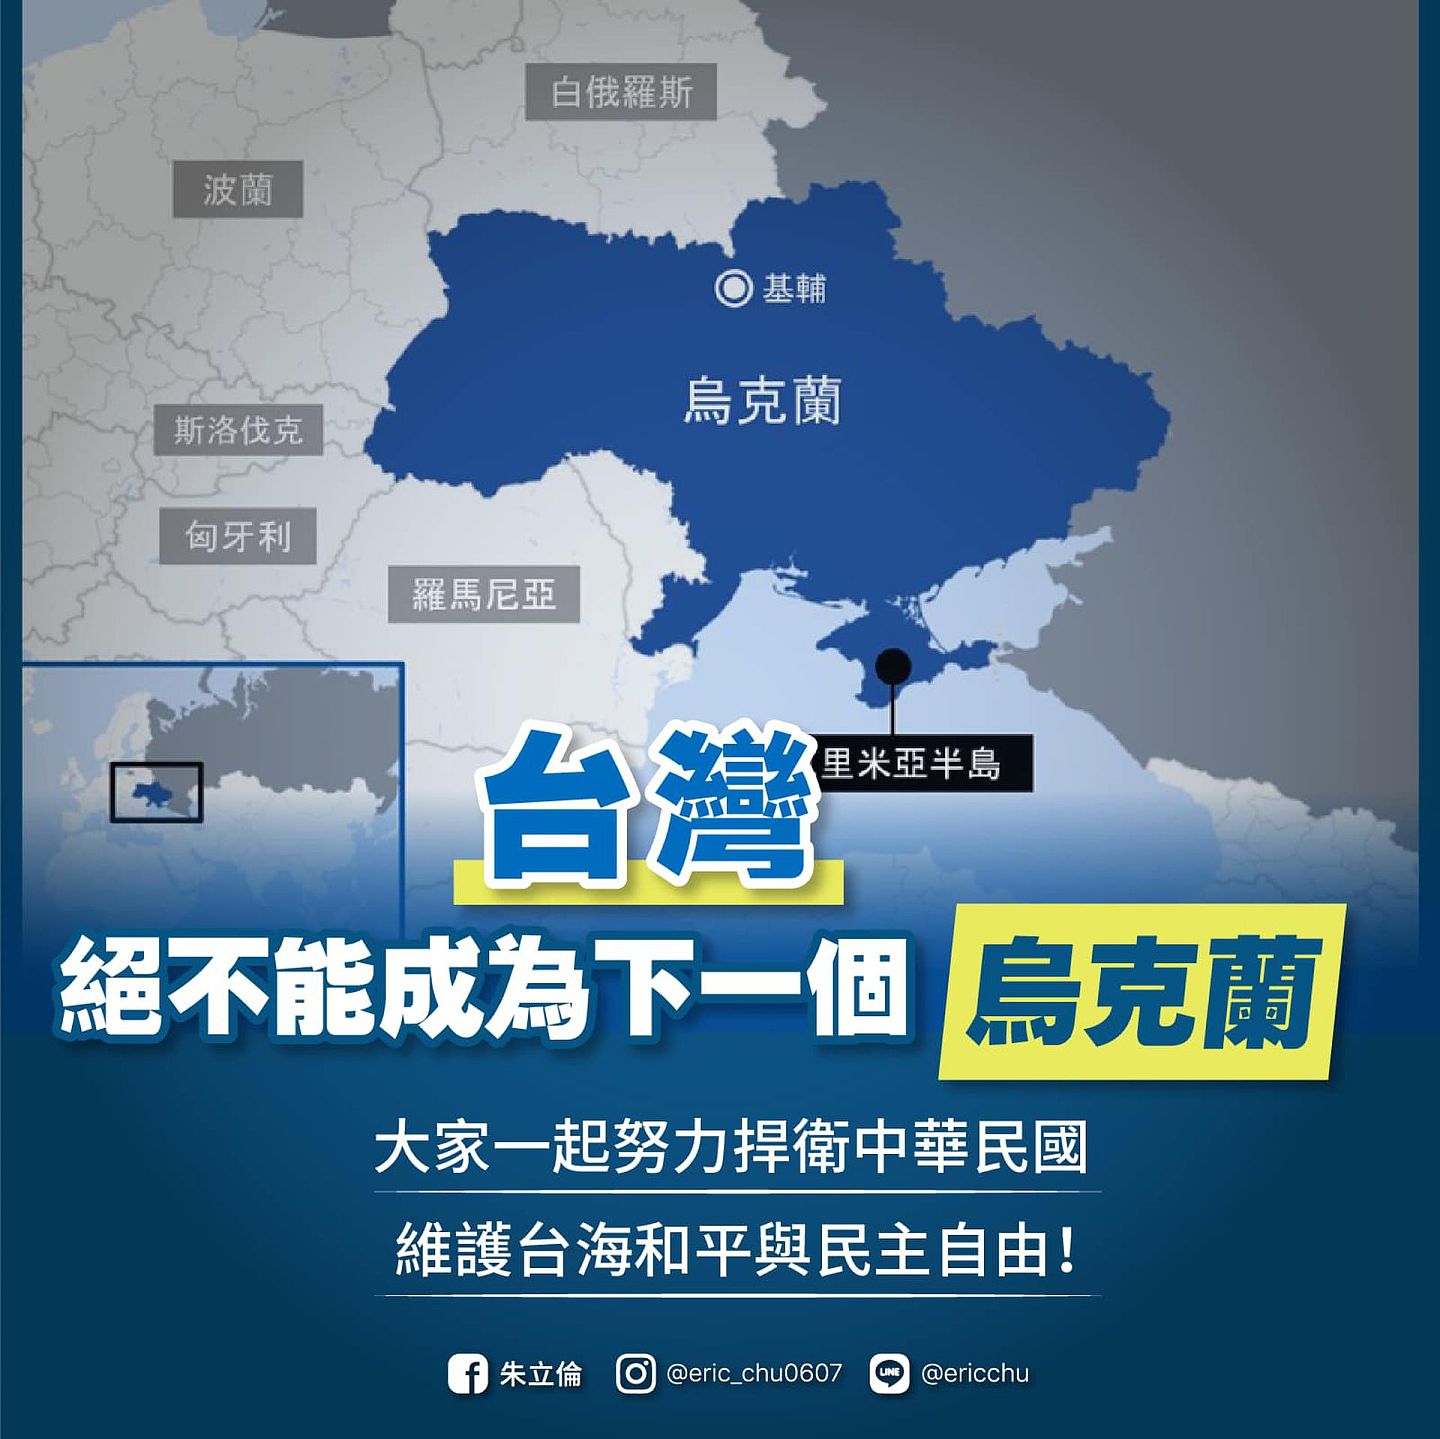 国民党主席朱立伦在脸书呼吁“台湾绝不能成为下一个乌克兰”，表达“捍卫中华民国，坚持民主自由，守护台湾人民的安全”的立场。（Facebook@朱立伦）